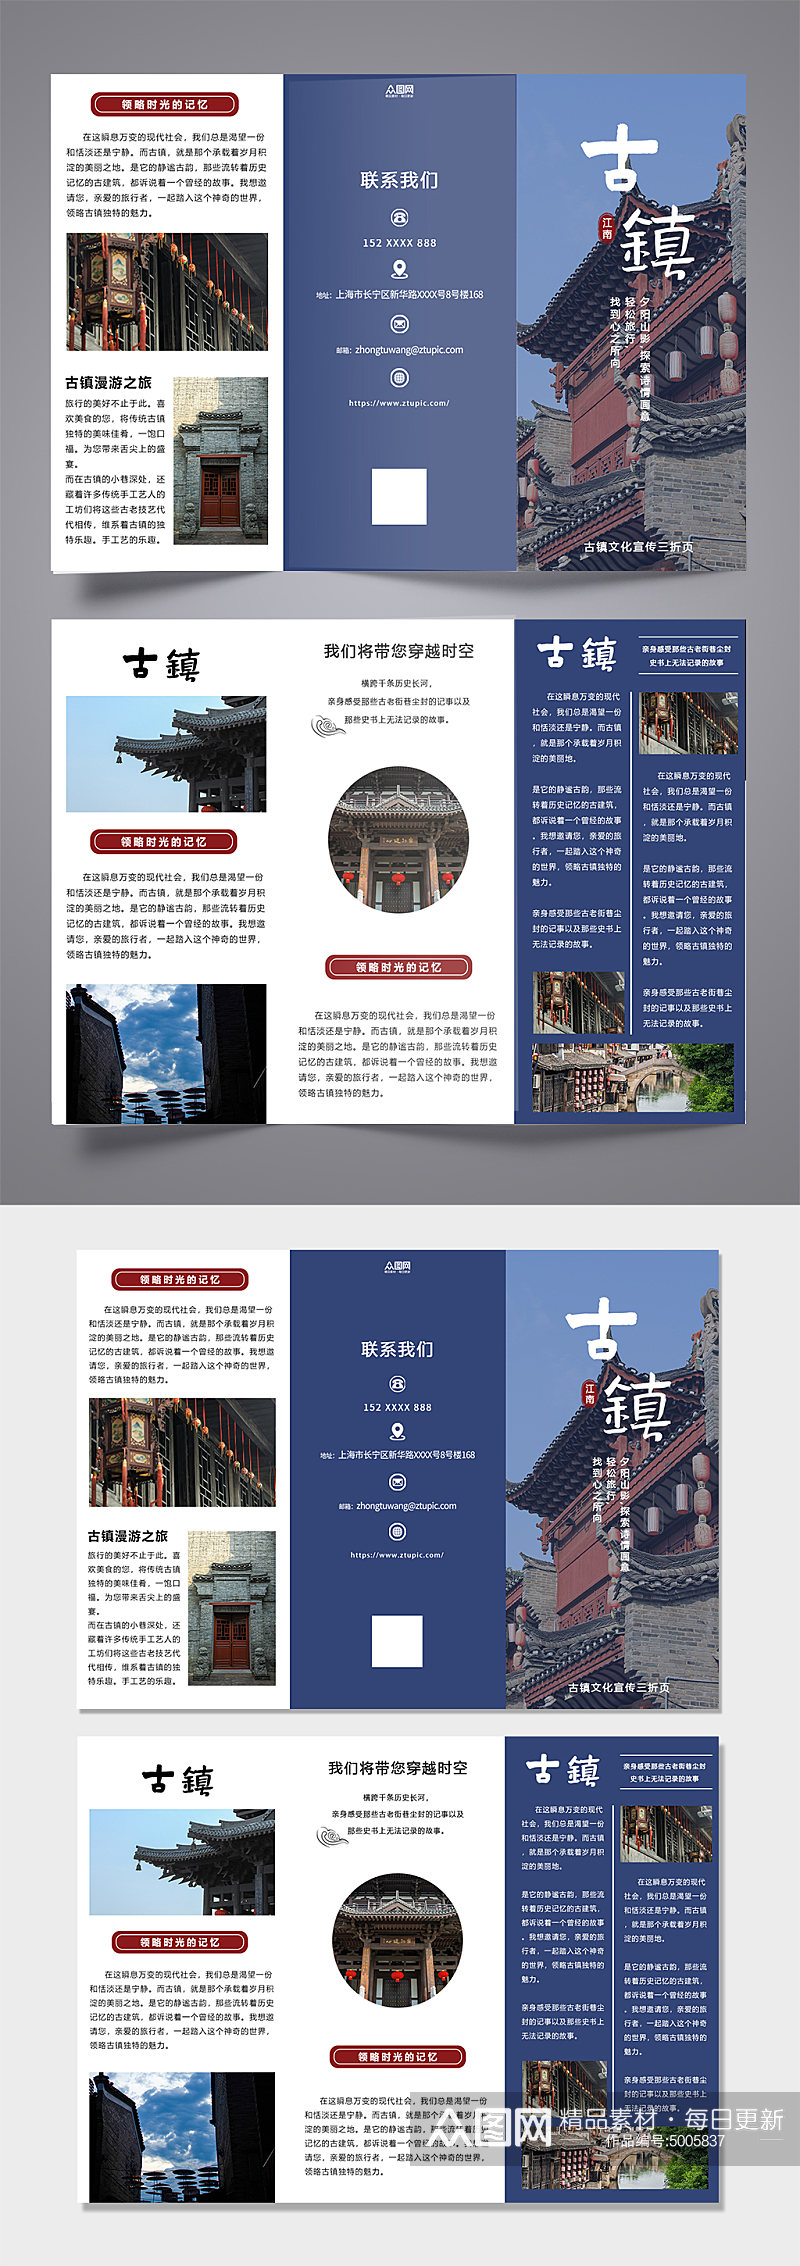 蓝色大气古建筑古镇文化旅游宣传三折页素材